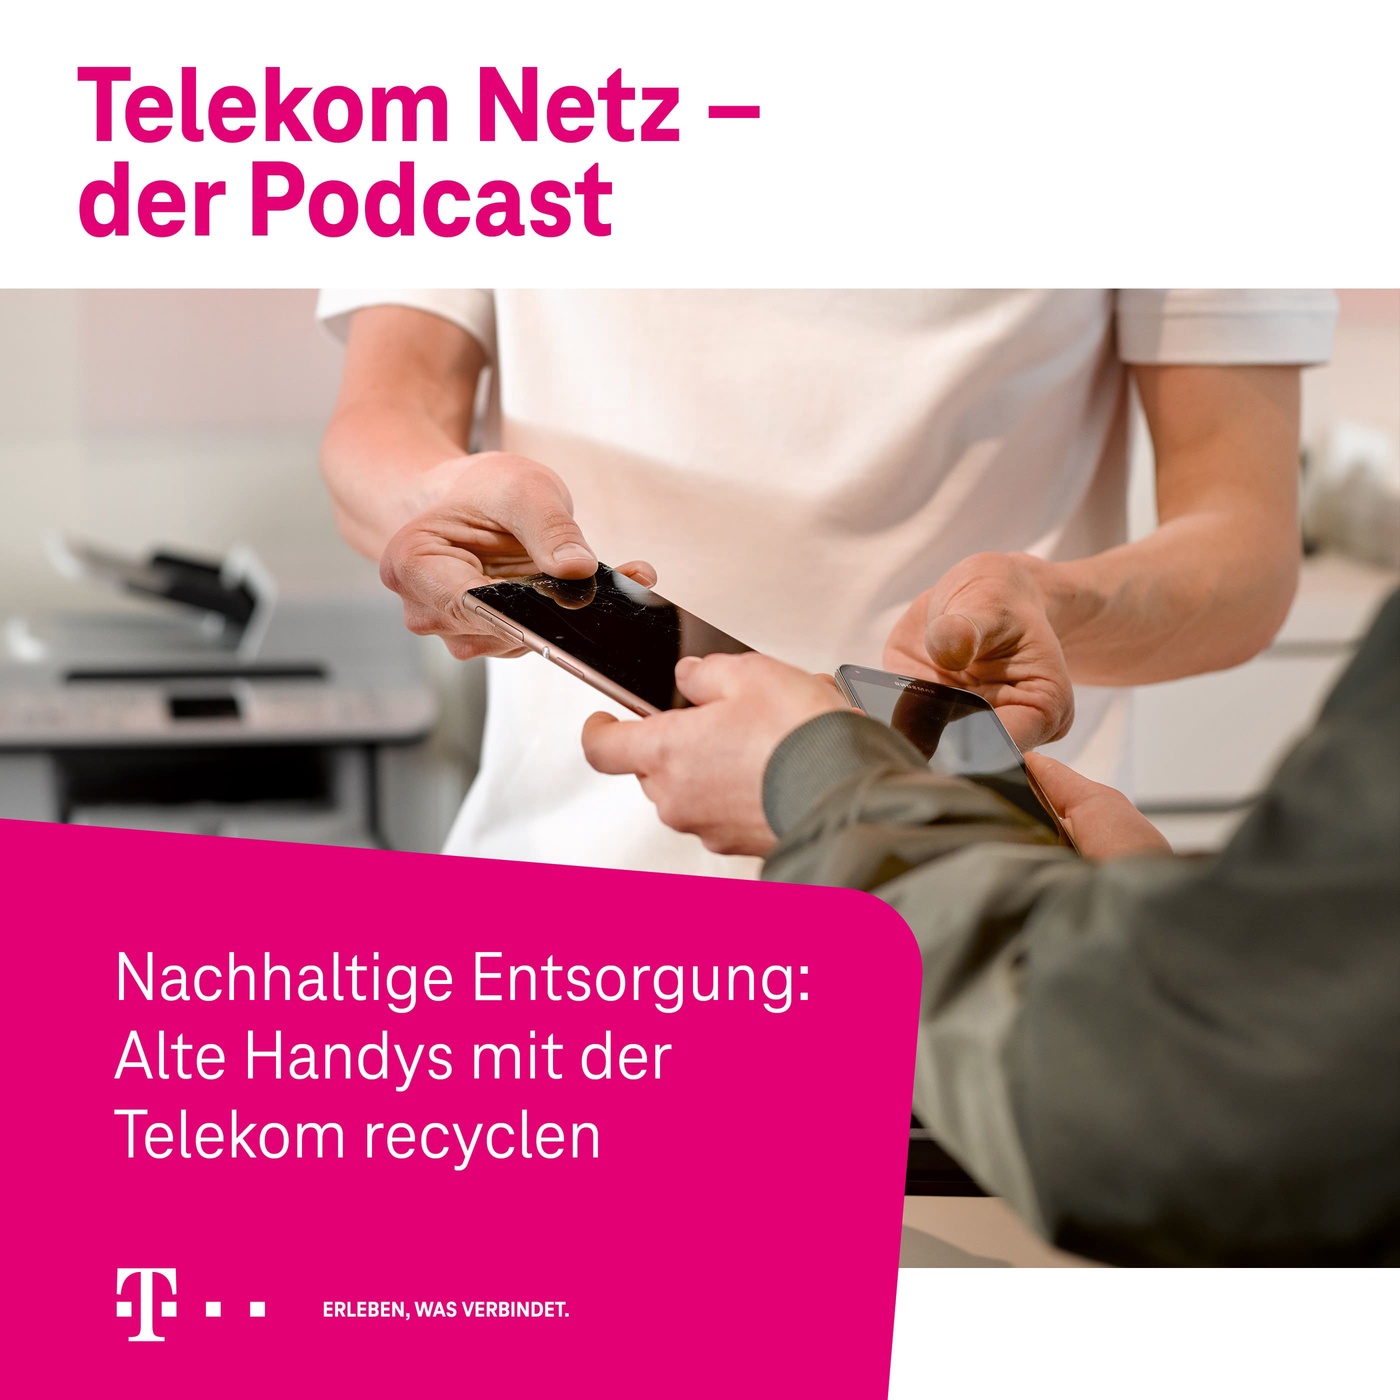 Episode 77 - Nachhaltige Entsorgung: Alte Handys mit der Telekom recyclen